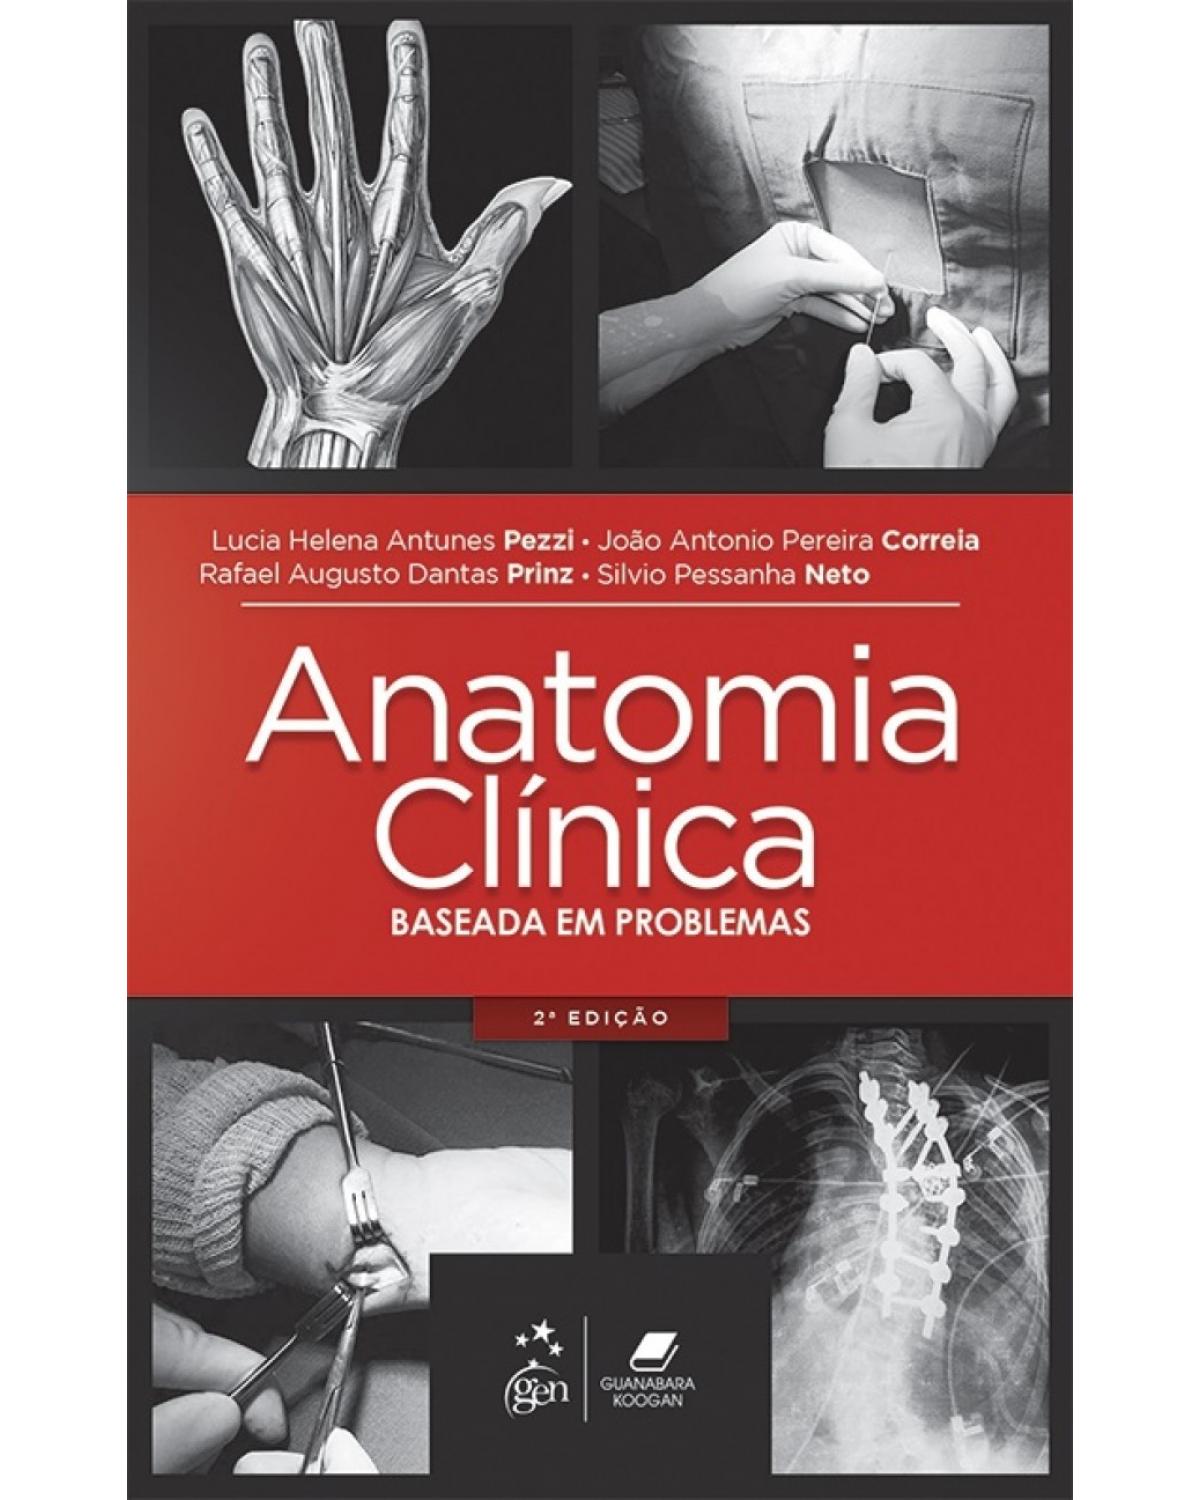 Anatomia clínica - Baseada em problemas - 2ª Edição | 2017